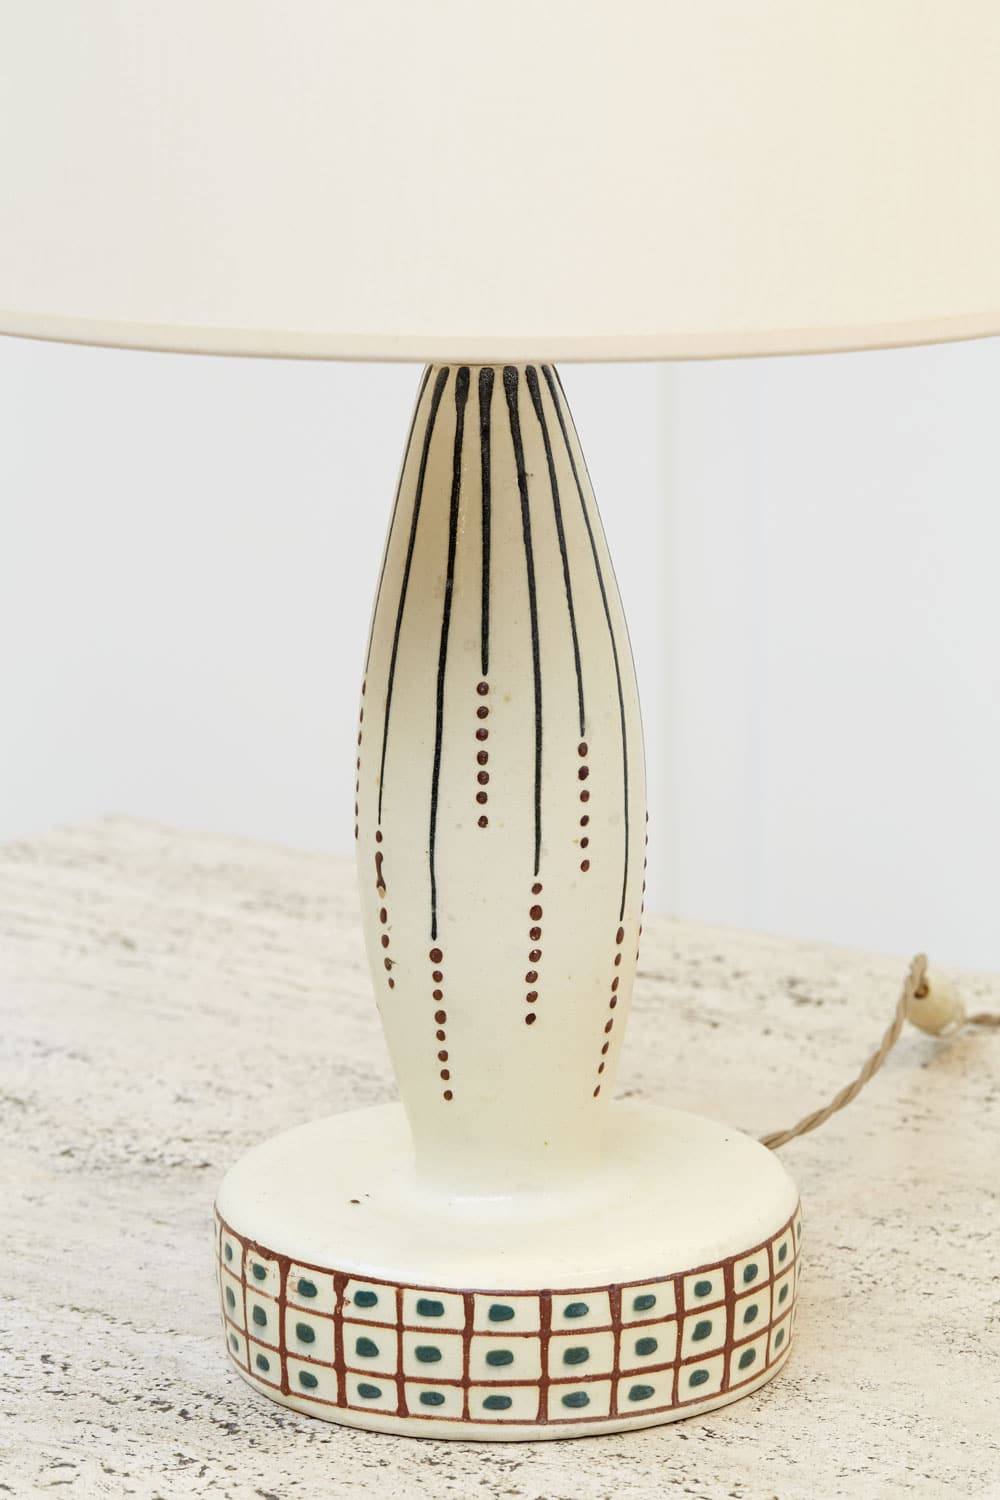 Francis Jourdain, Lampe en céramique, vue 01